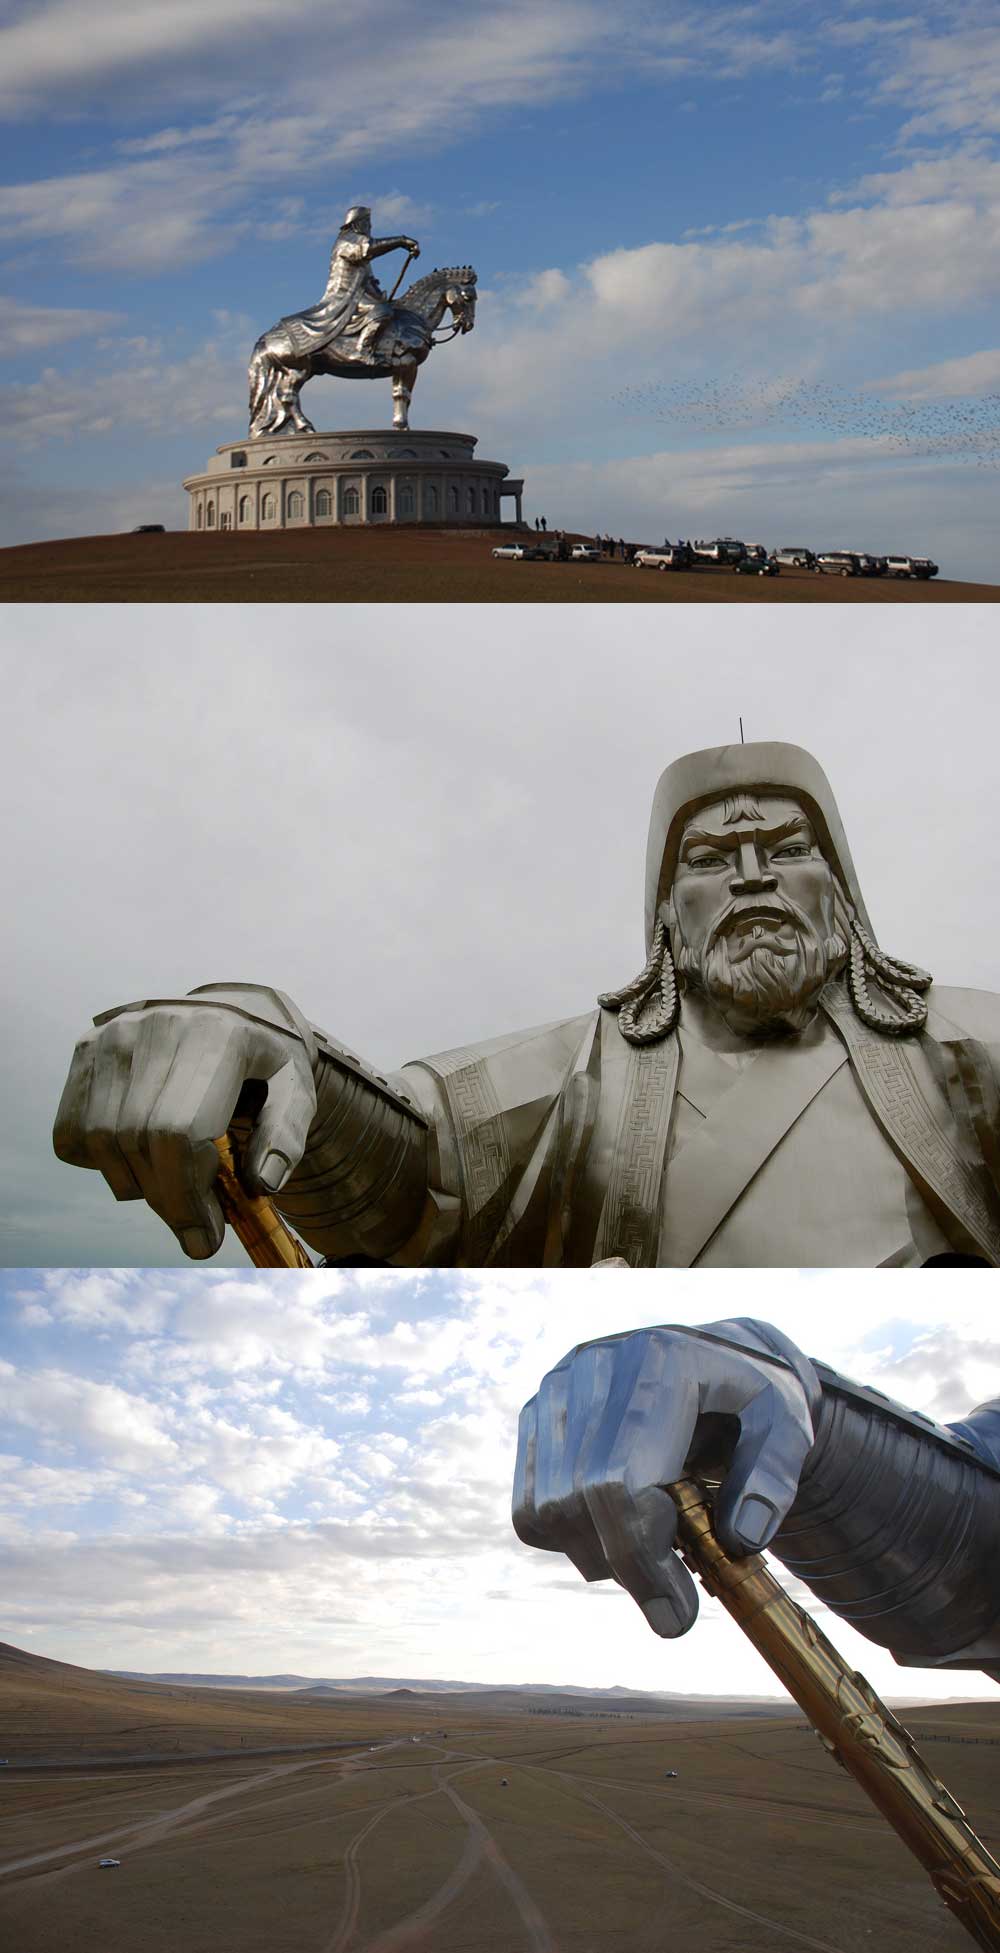 Fakta: Statyn av Djingis Khan står på världens högsta staty av en häst, ca 54 km från Ulan Bator